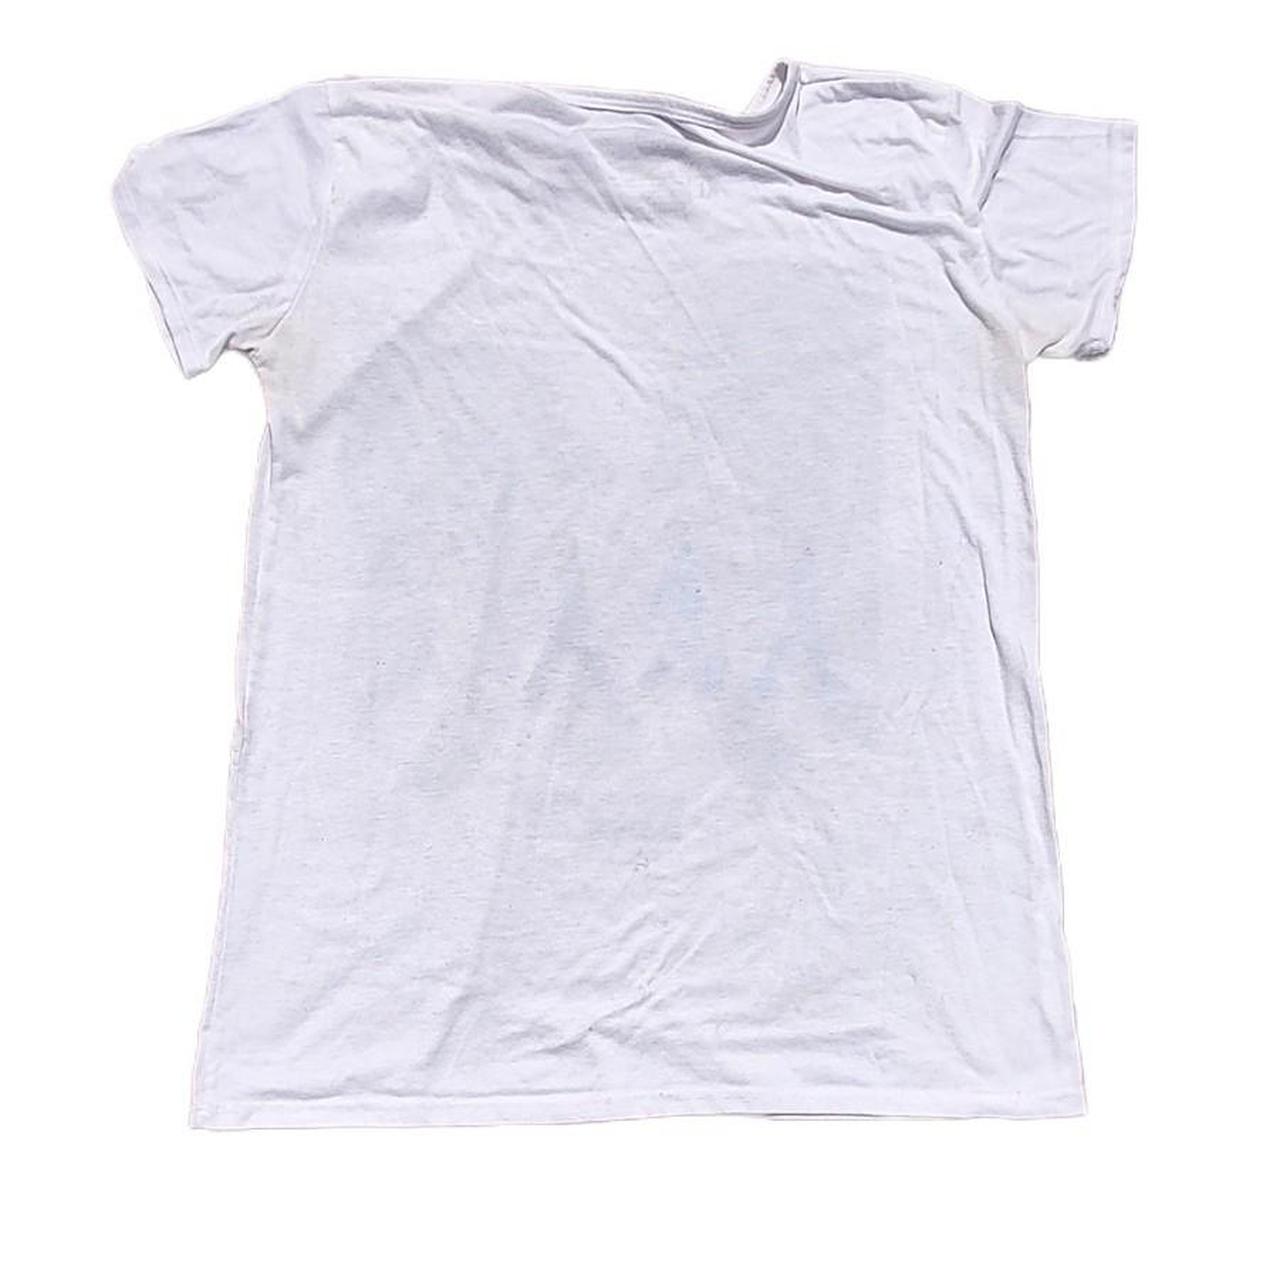 Women's White T-shirt (2)